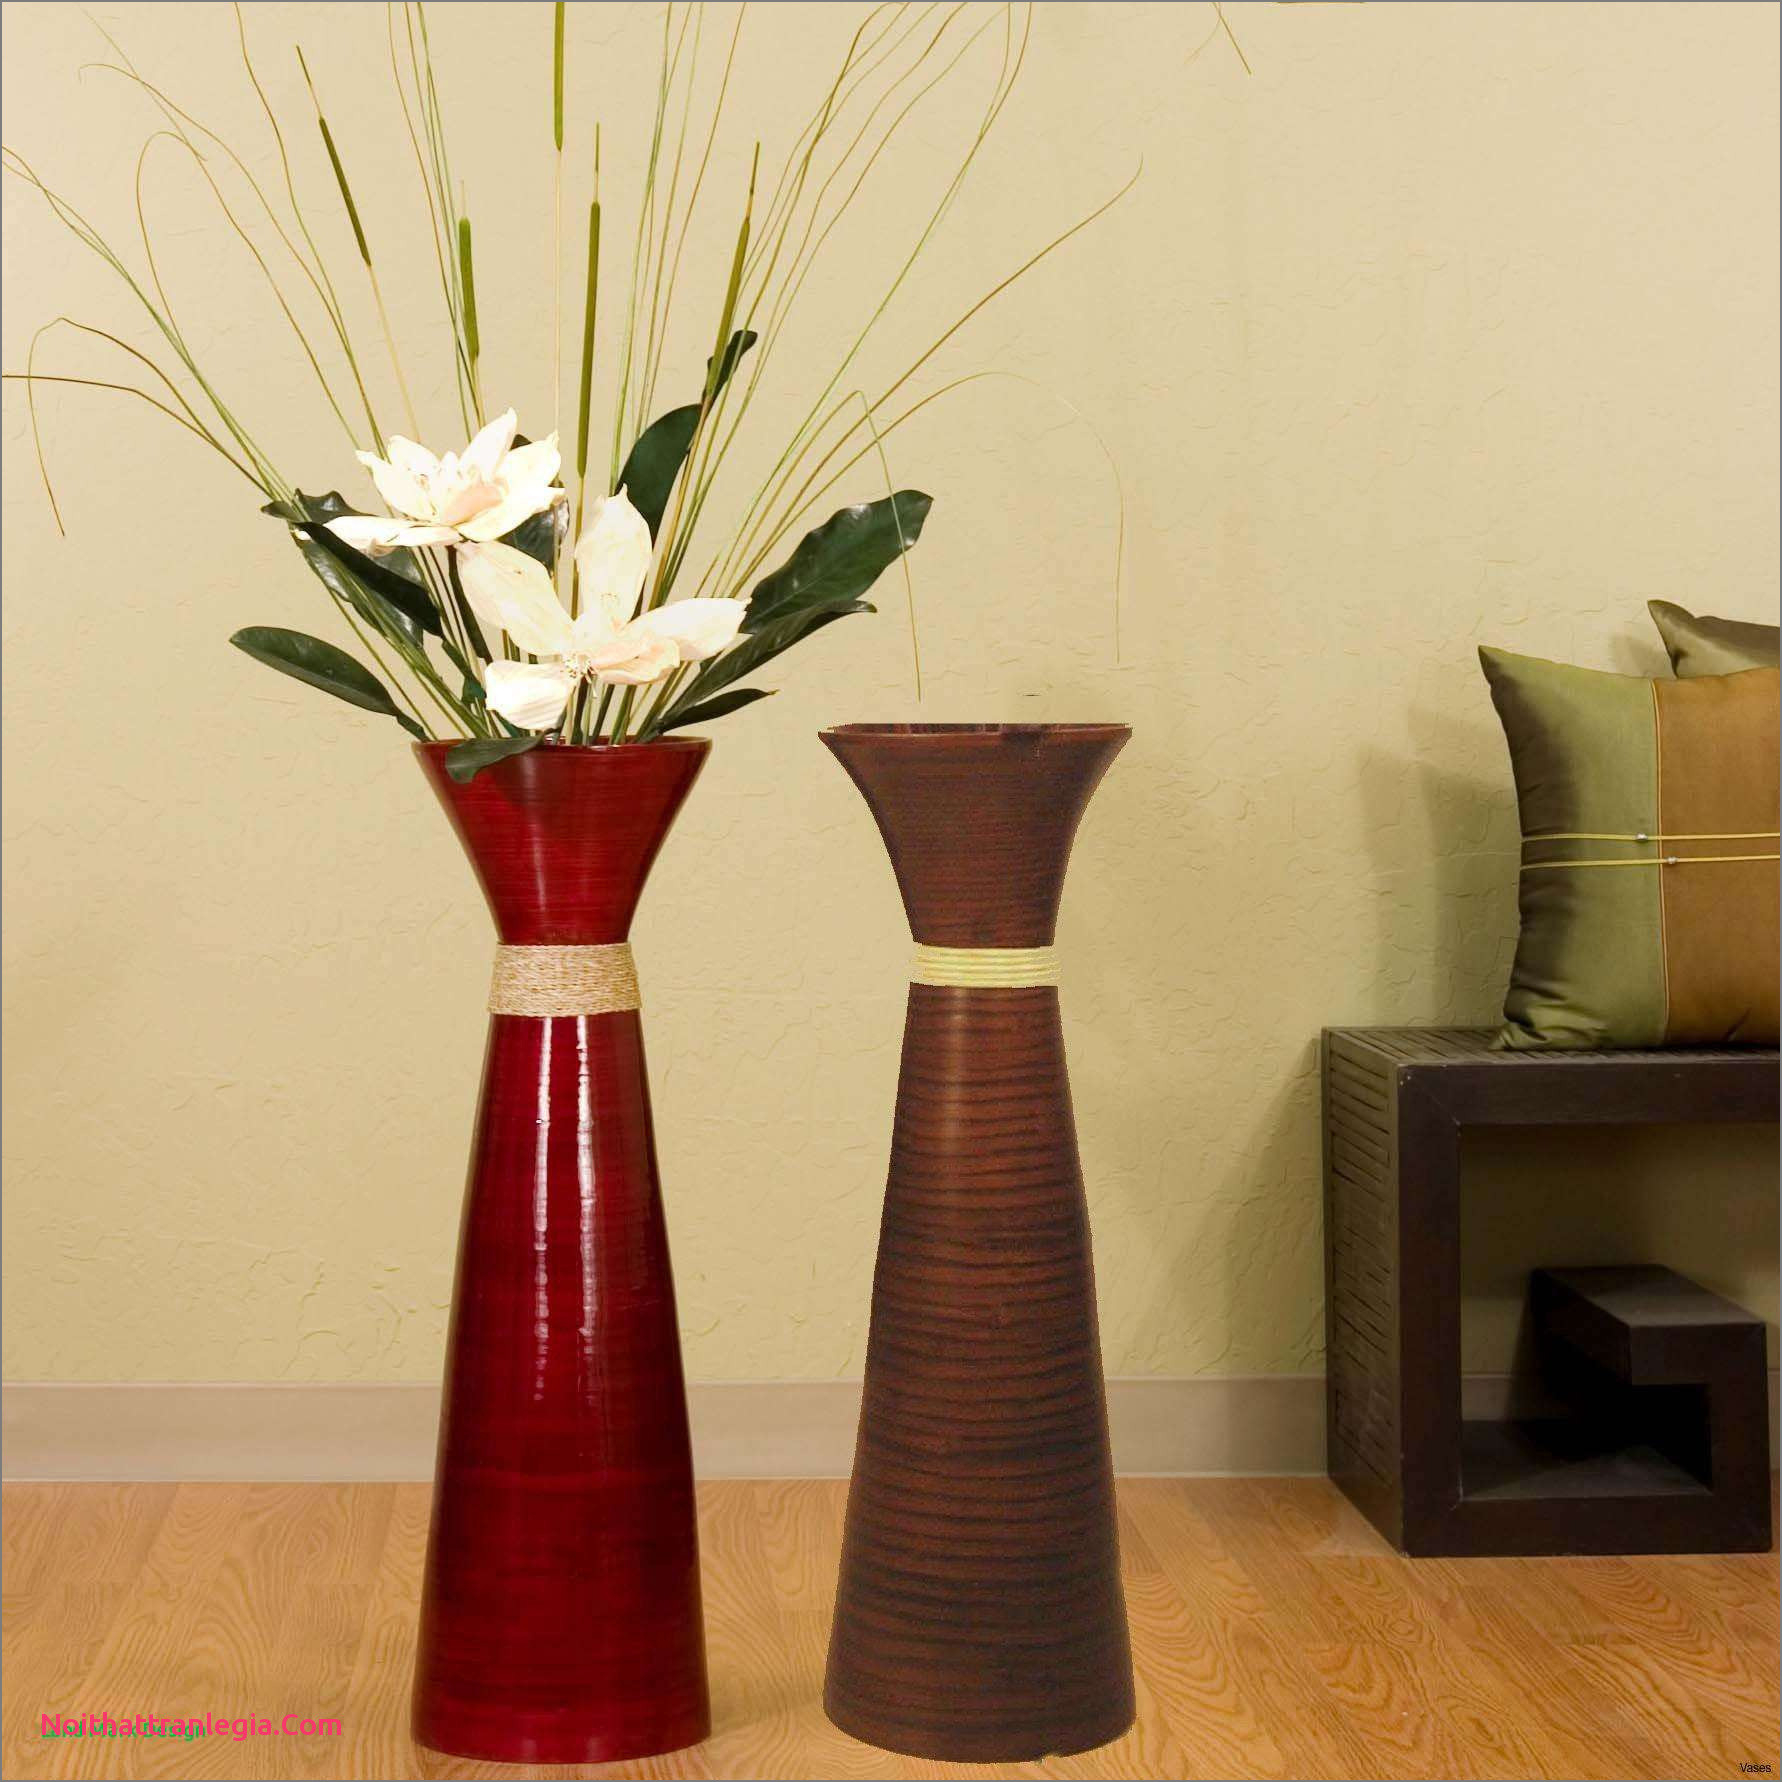 11 Unique Floor Vase Arrangements Decorative Vase Ideas intended for dimensions 1782 X 1782